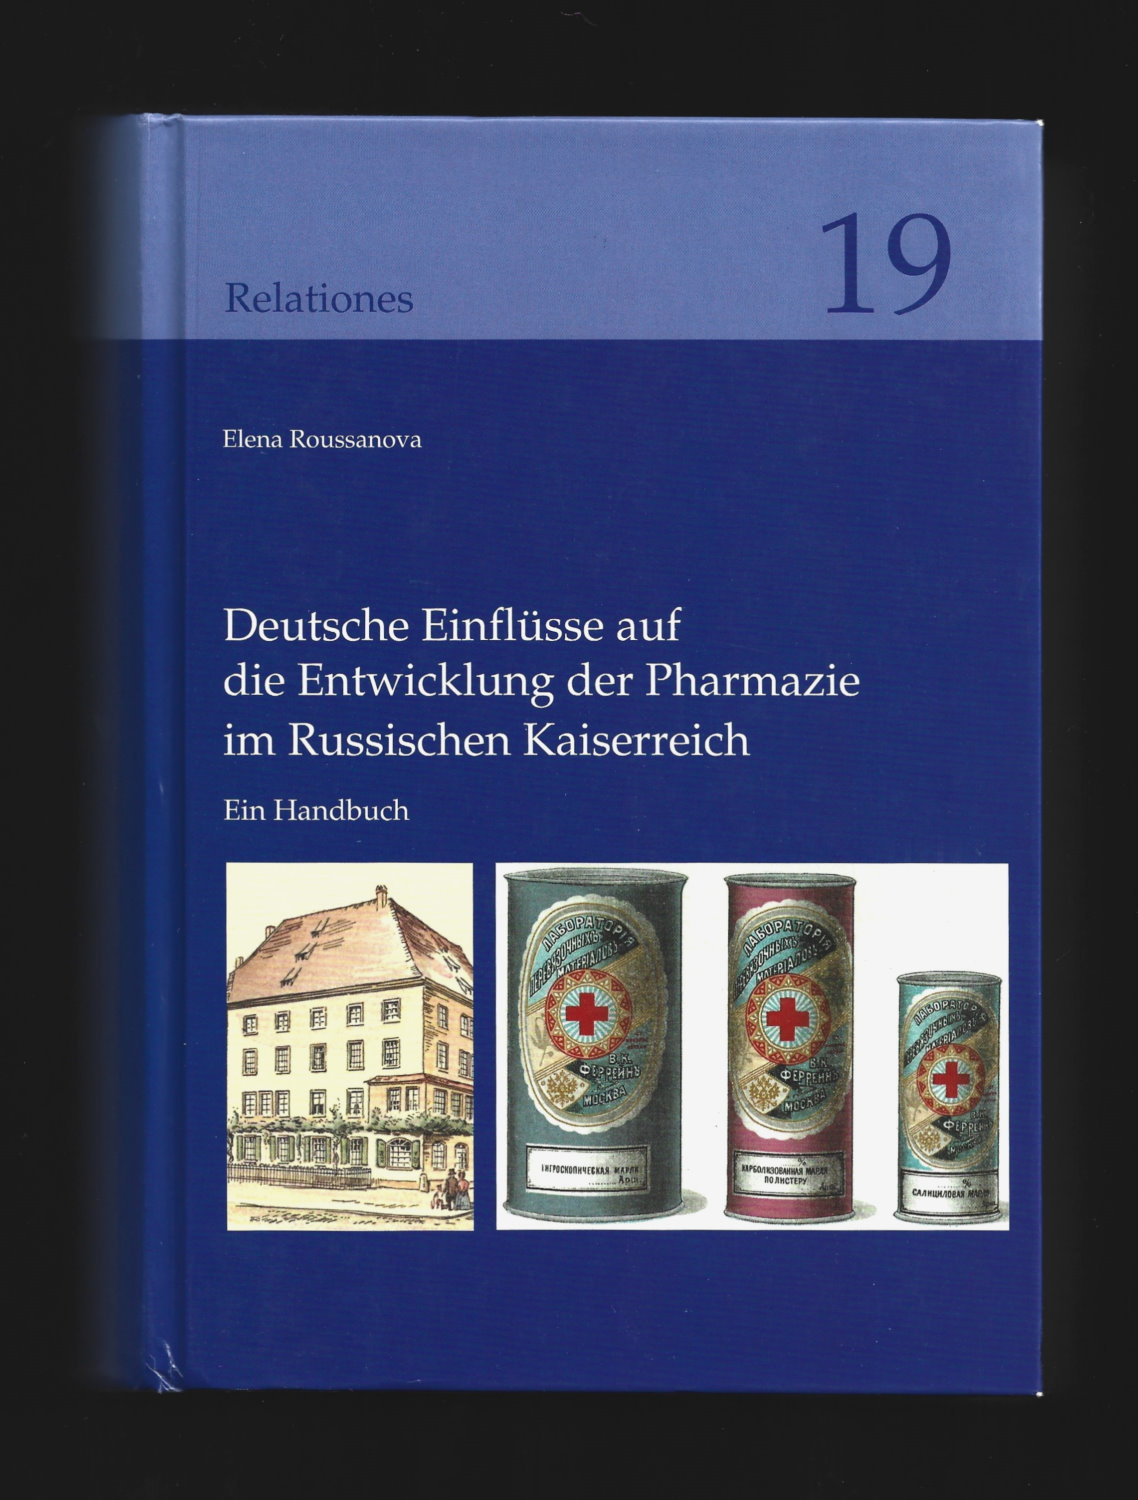 Deutsche Einflüsse auf die Entwicklung der Pharmazie im Russischen Kaiserreich: Ein Handbuch (Relationes, 19) - Elena Roussanova; Ostrun Riha (Foreword)